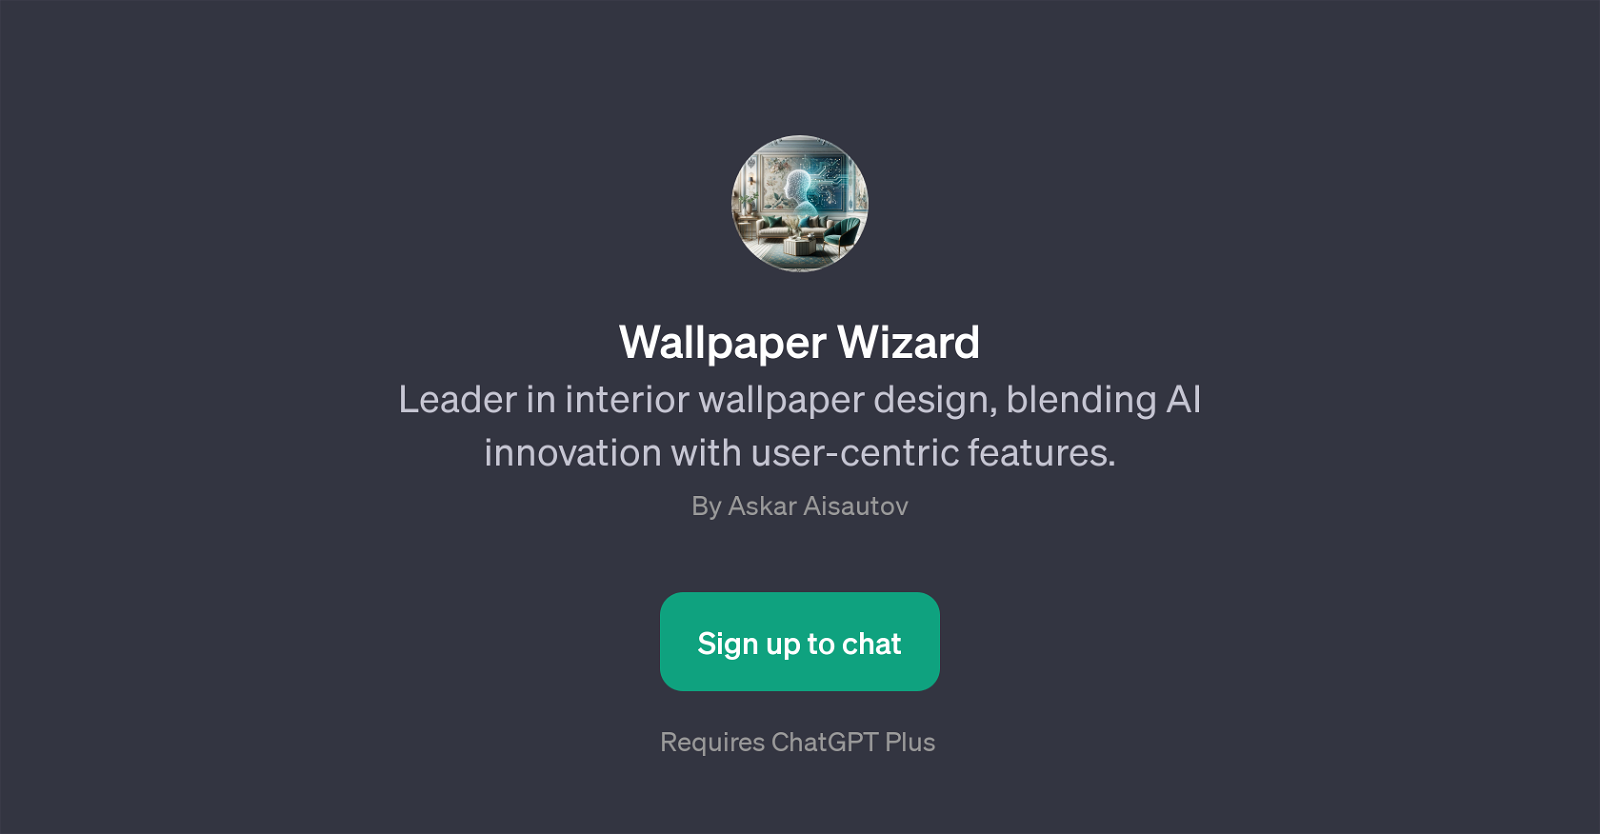 Wallpaper Wizard website